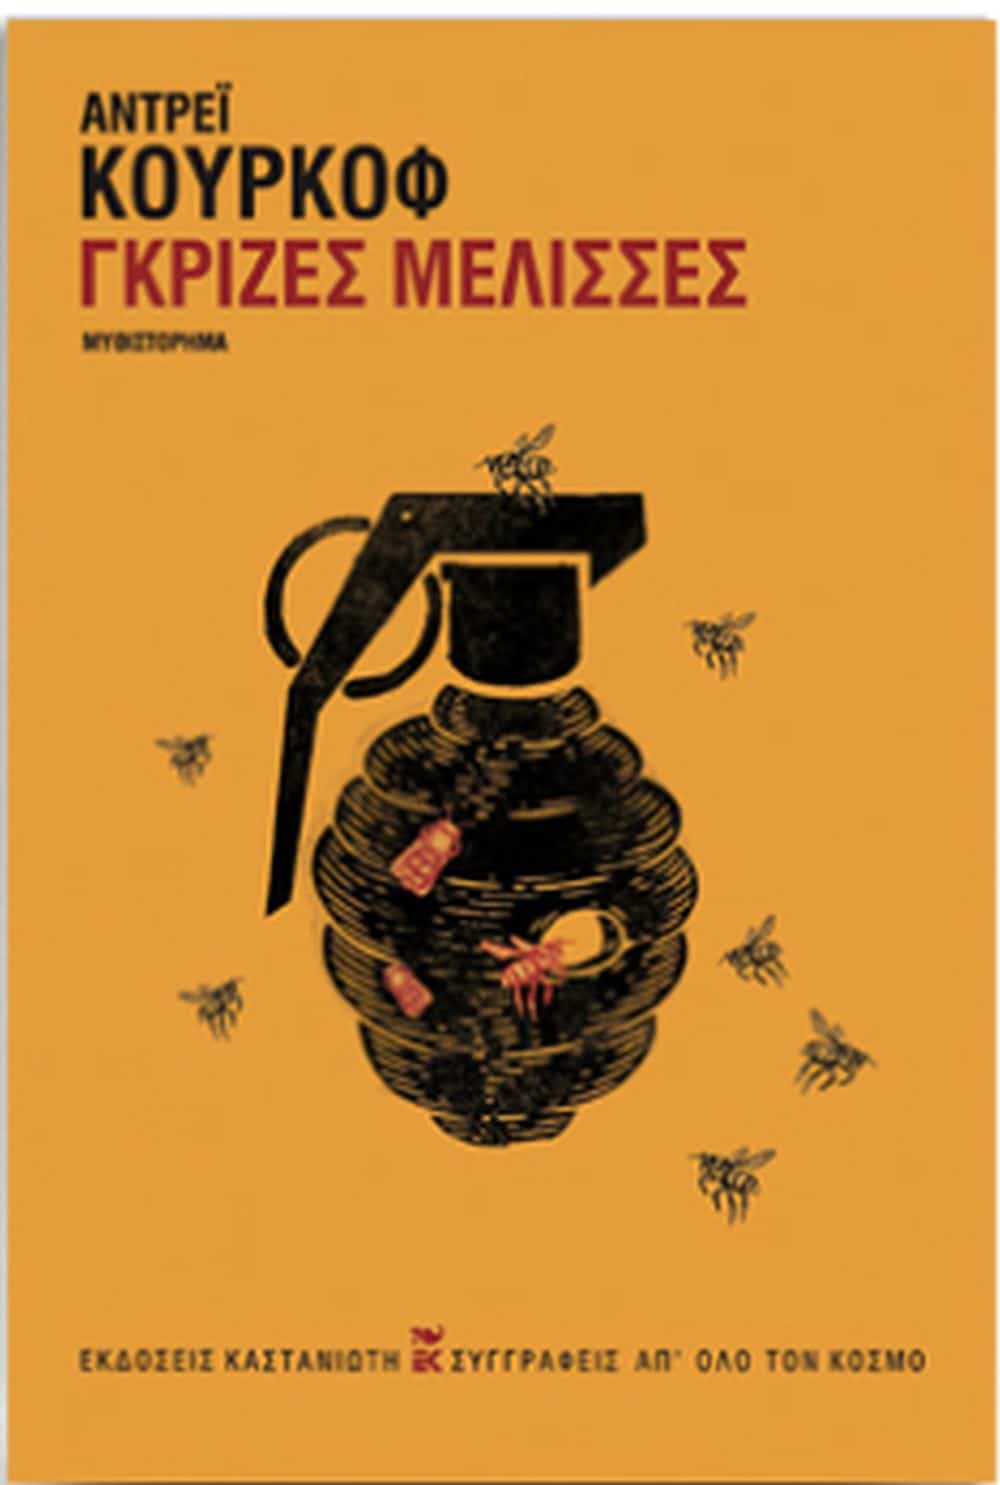 Οι «Γκρίζες μέλισσες» του Κούρκοφ